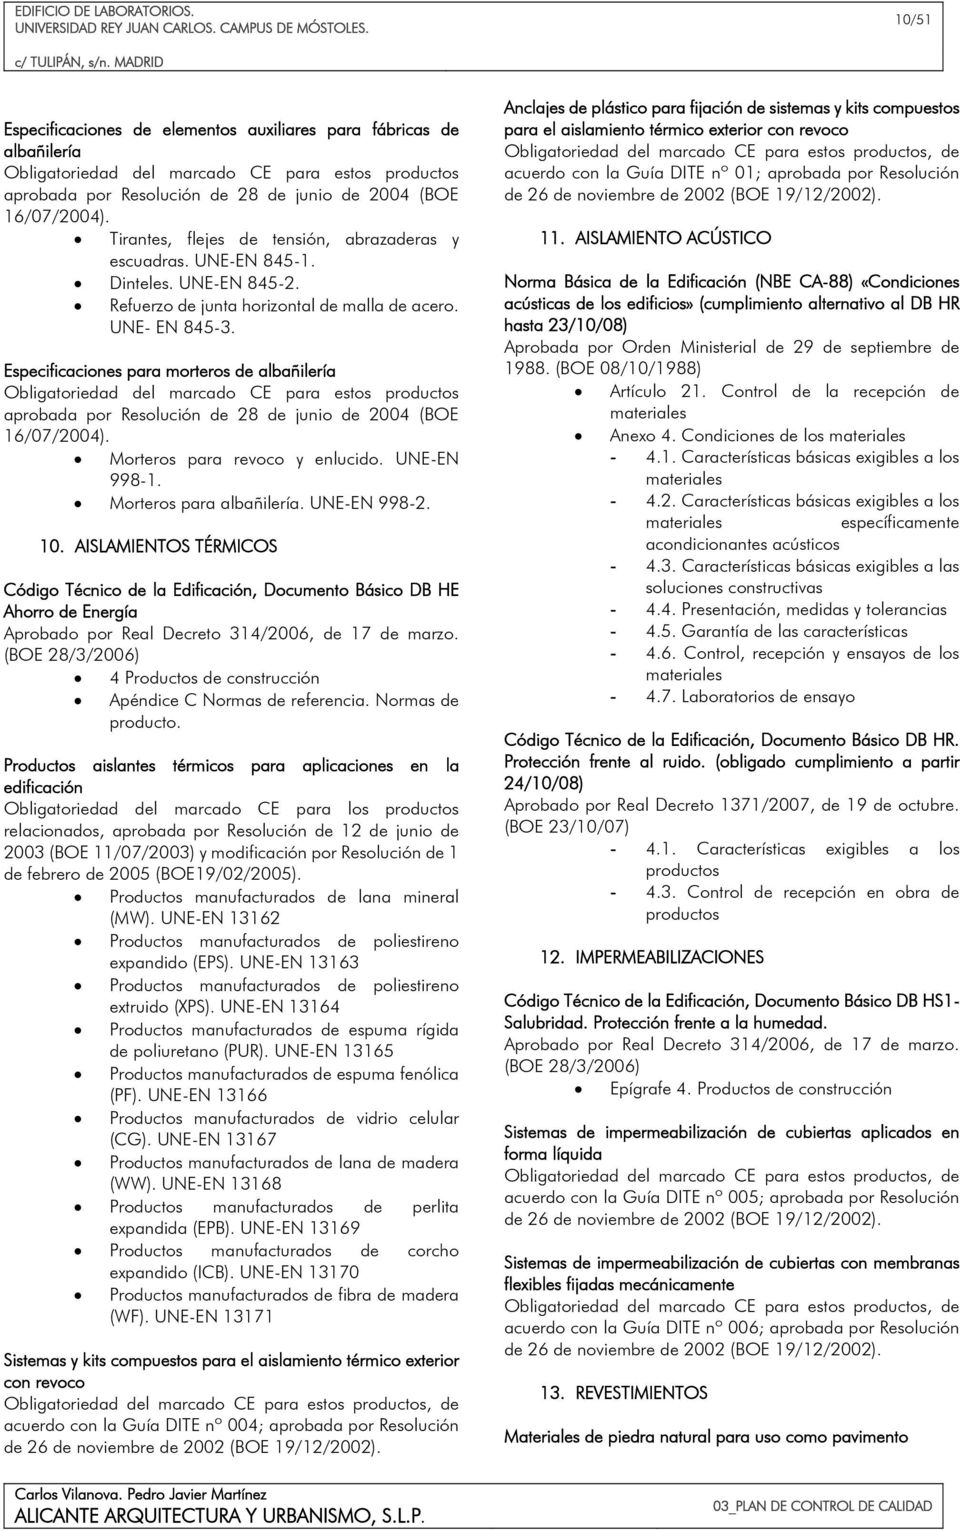 Especificaciones para morteros de albañilería Obligatoriedad del marcado CE para estos productos aprobada por Resolución de 28 de junio de 2004 (BOE 16/07/2004). Morteros para revoco y enlucido.